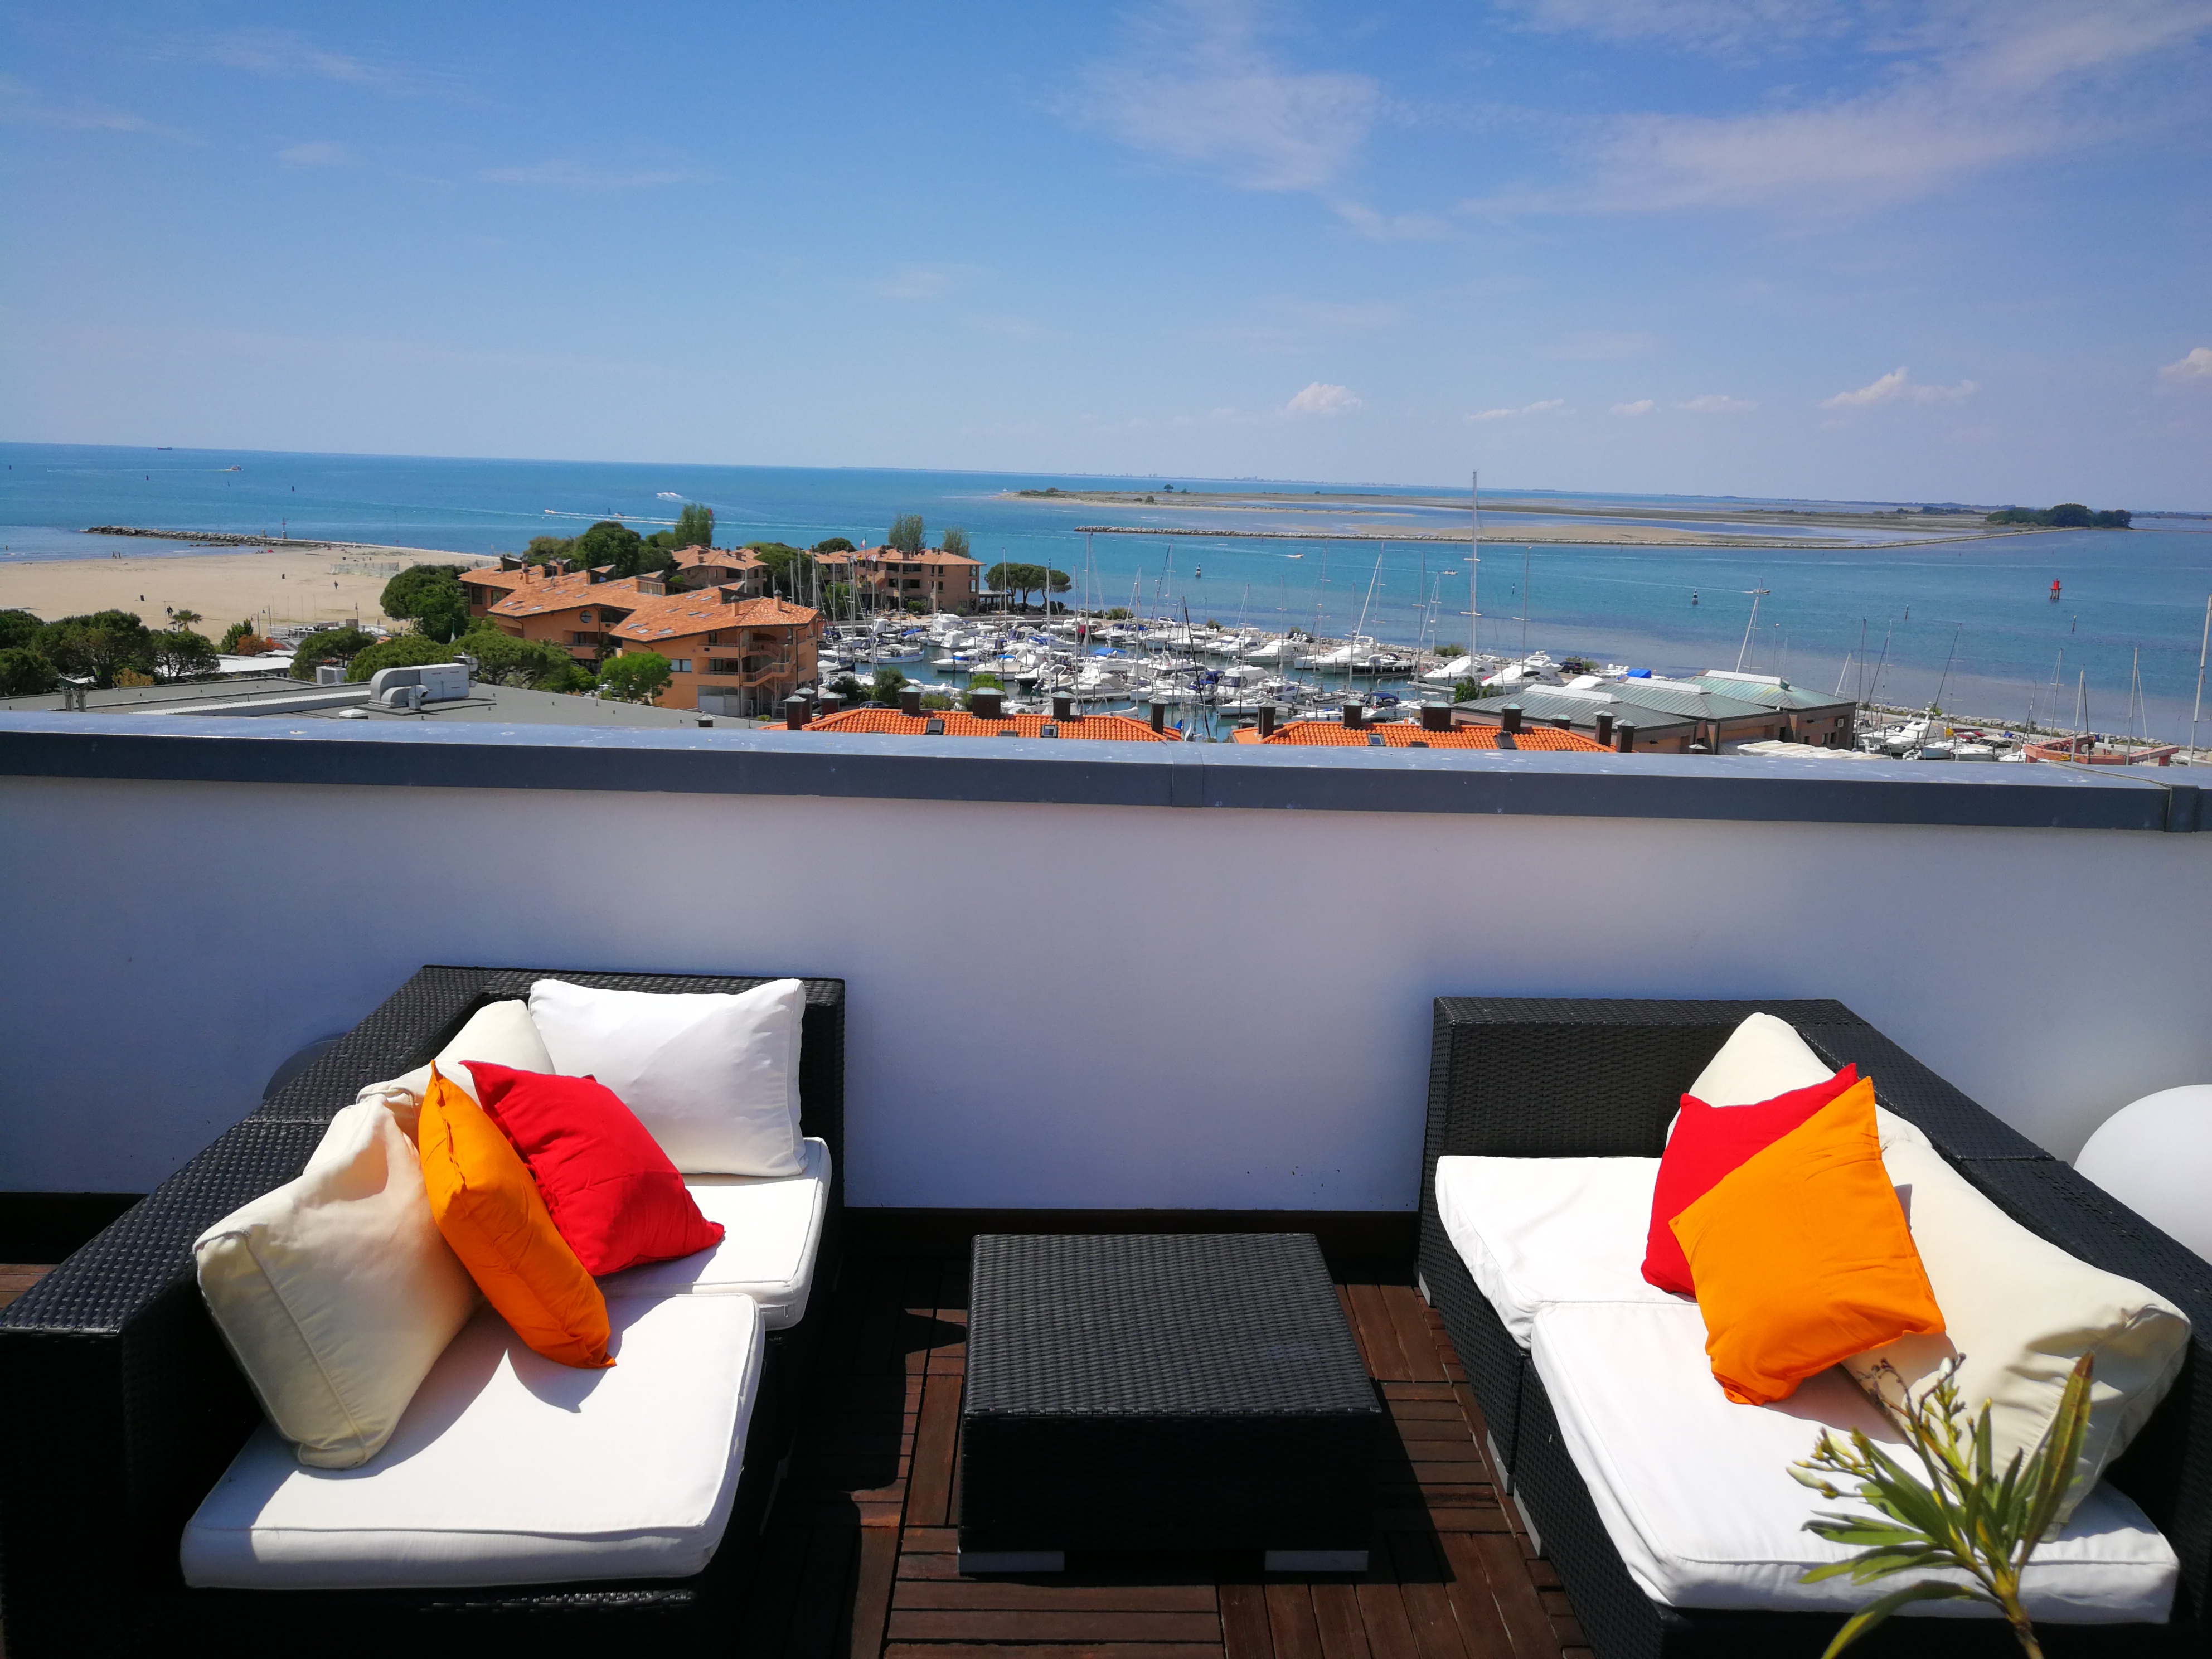 A Grado nuovo appuntamento con i “Laguna AperiSky”, gli aperitivi sul rooftop vista mare del Laguna Palace Hotel